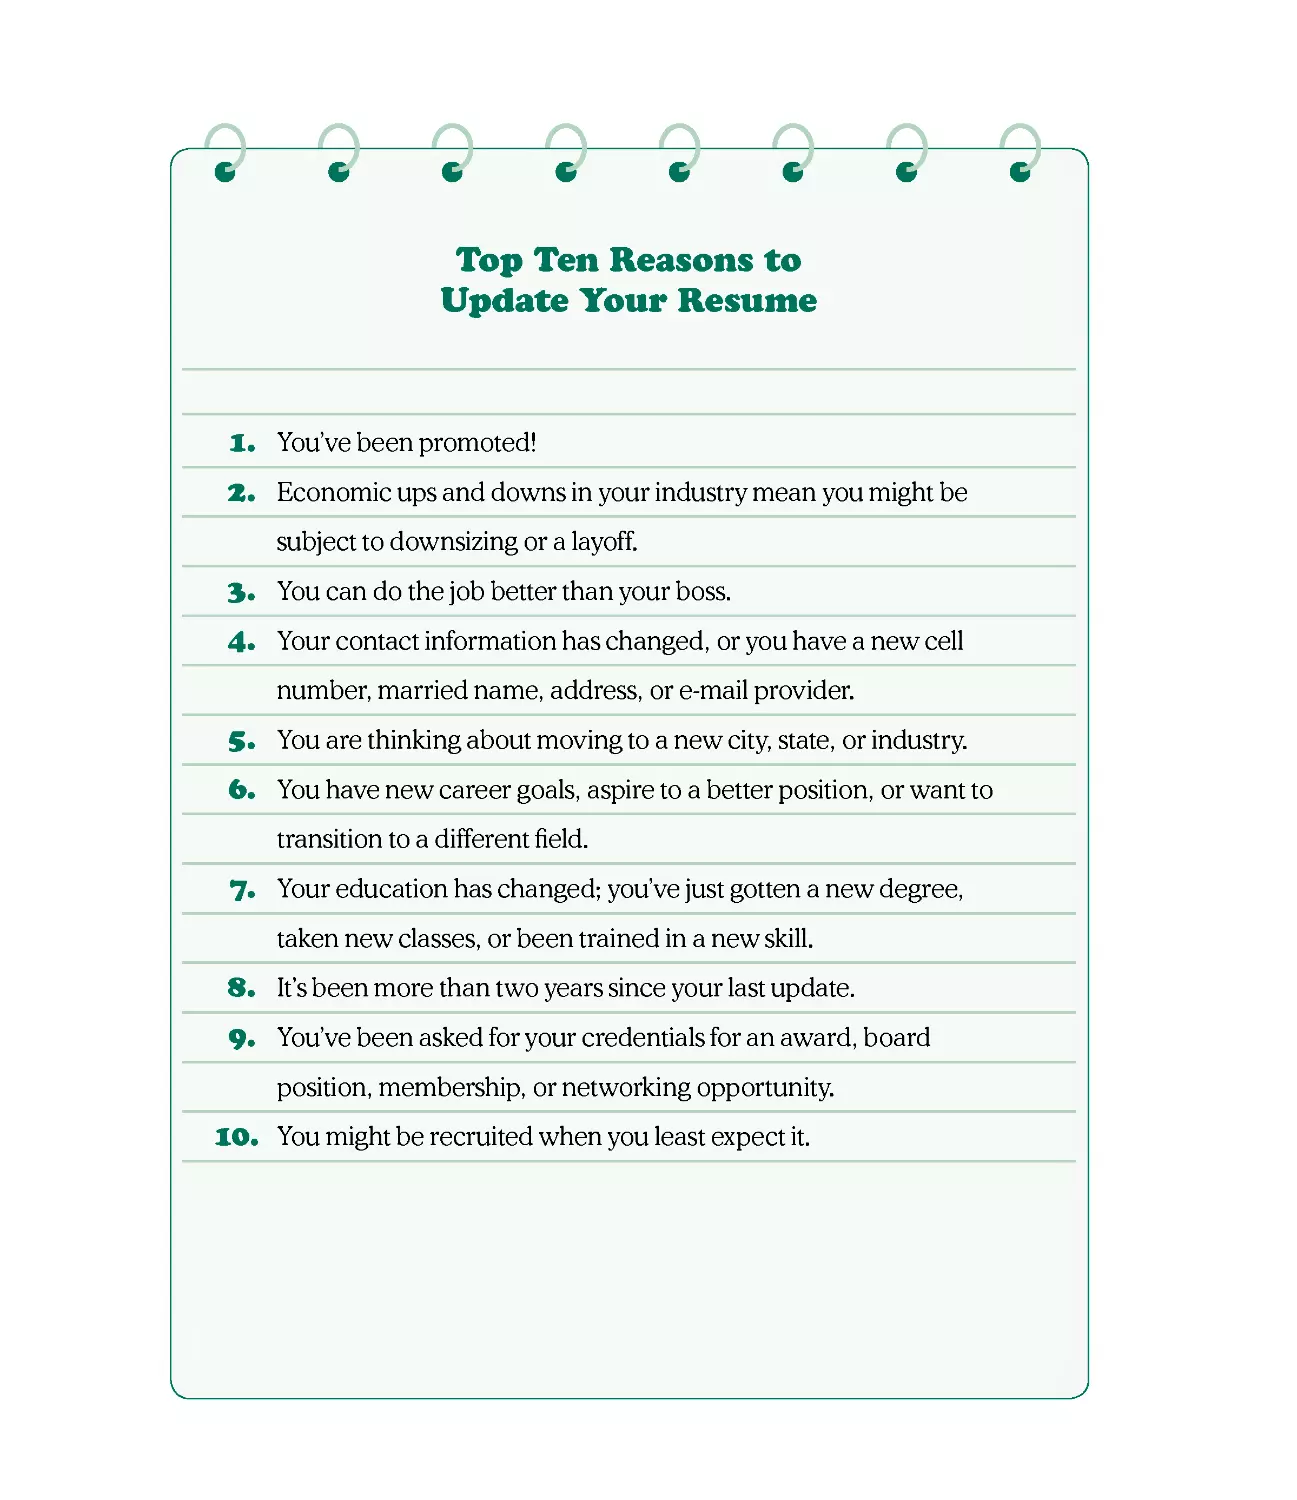 Top Ten Reasons to Update Your Resume